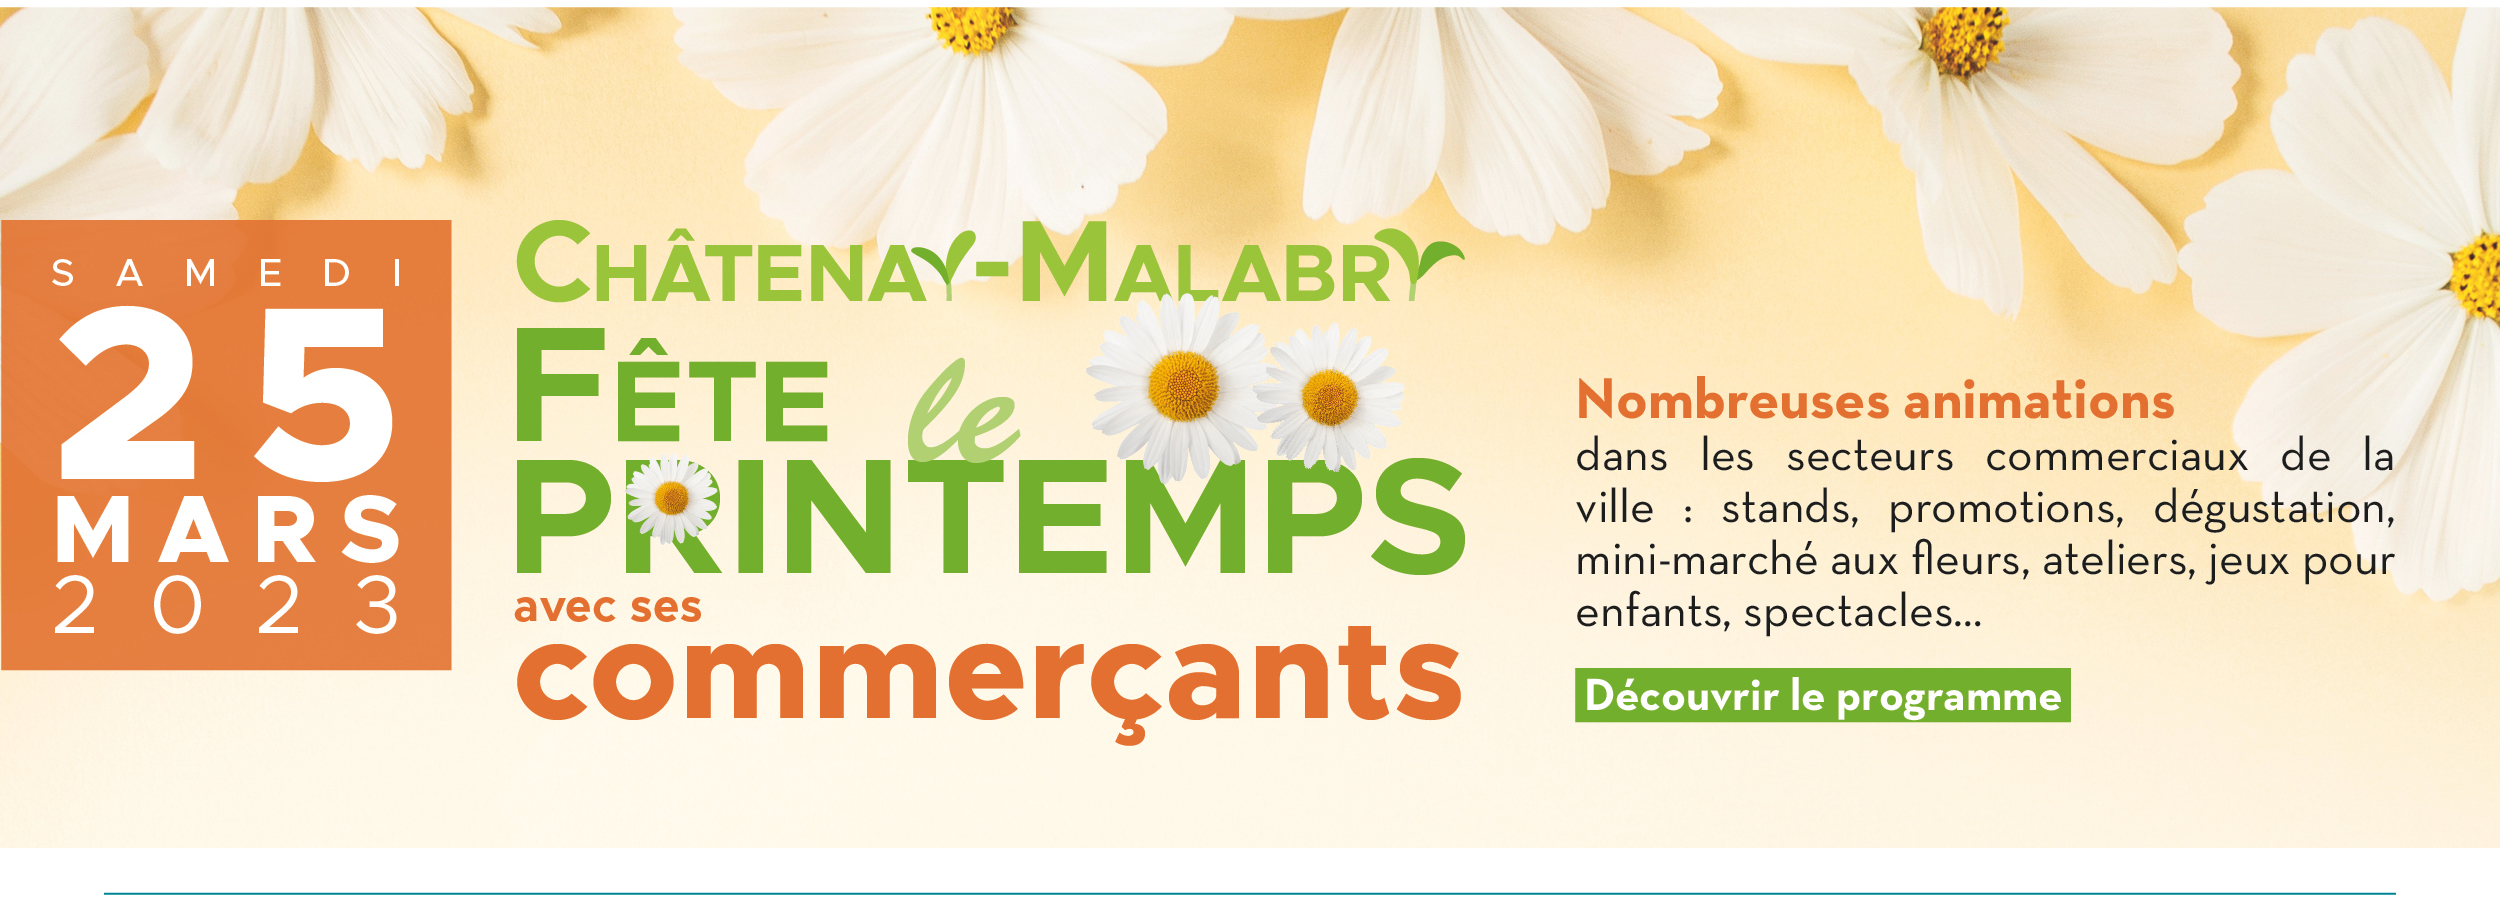 Châtenay-Malabry fête le printemps : le 25 mars 2023